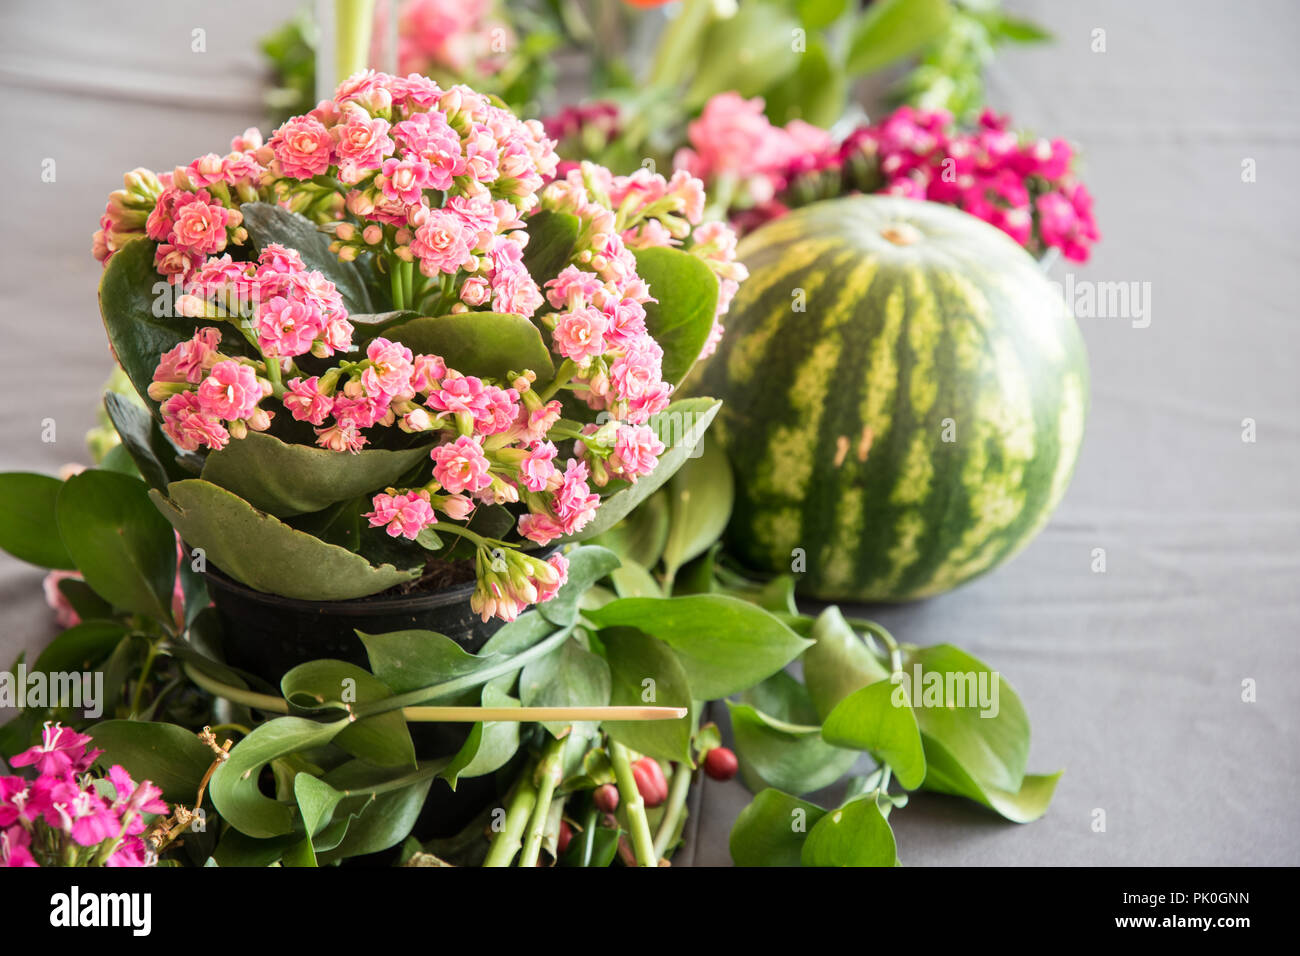 Un close-up, side et birds eye view d'un arrangement de fleurs de rose coloré bouquet en premier plan avec une pastèque ronde & raisins. Banque D'Images